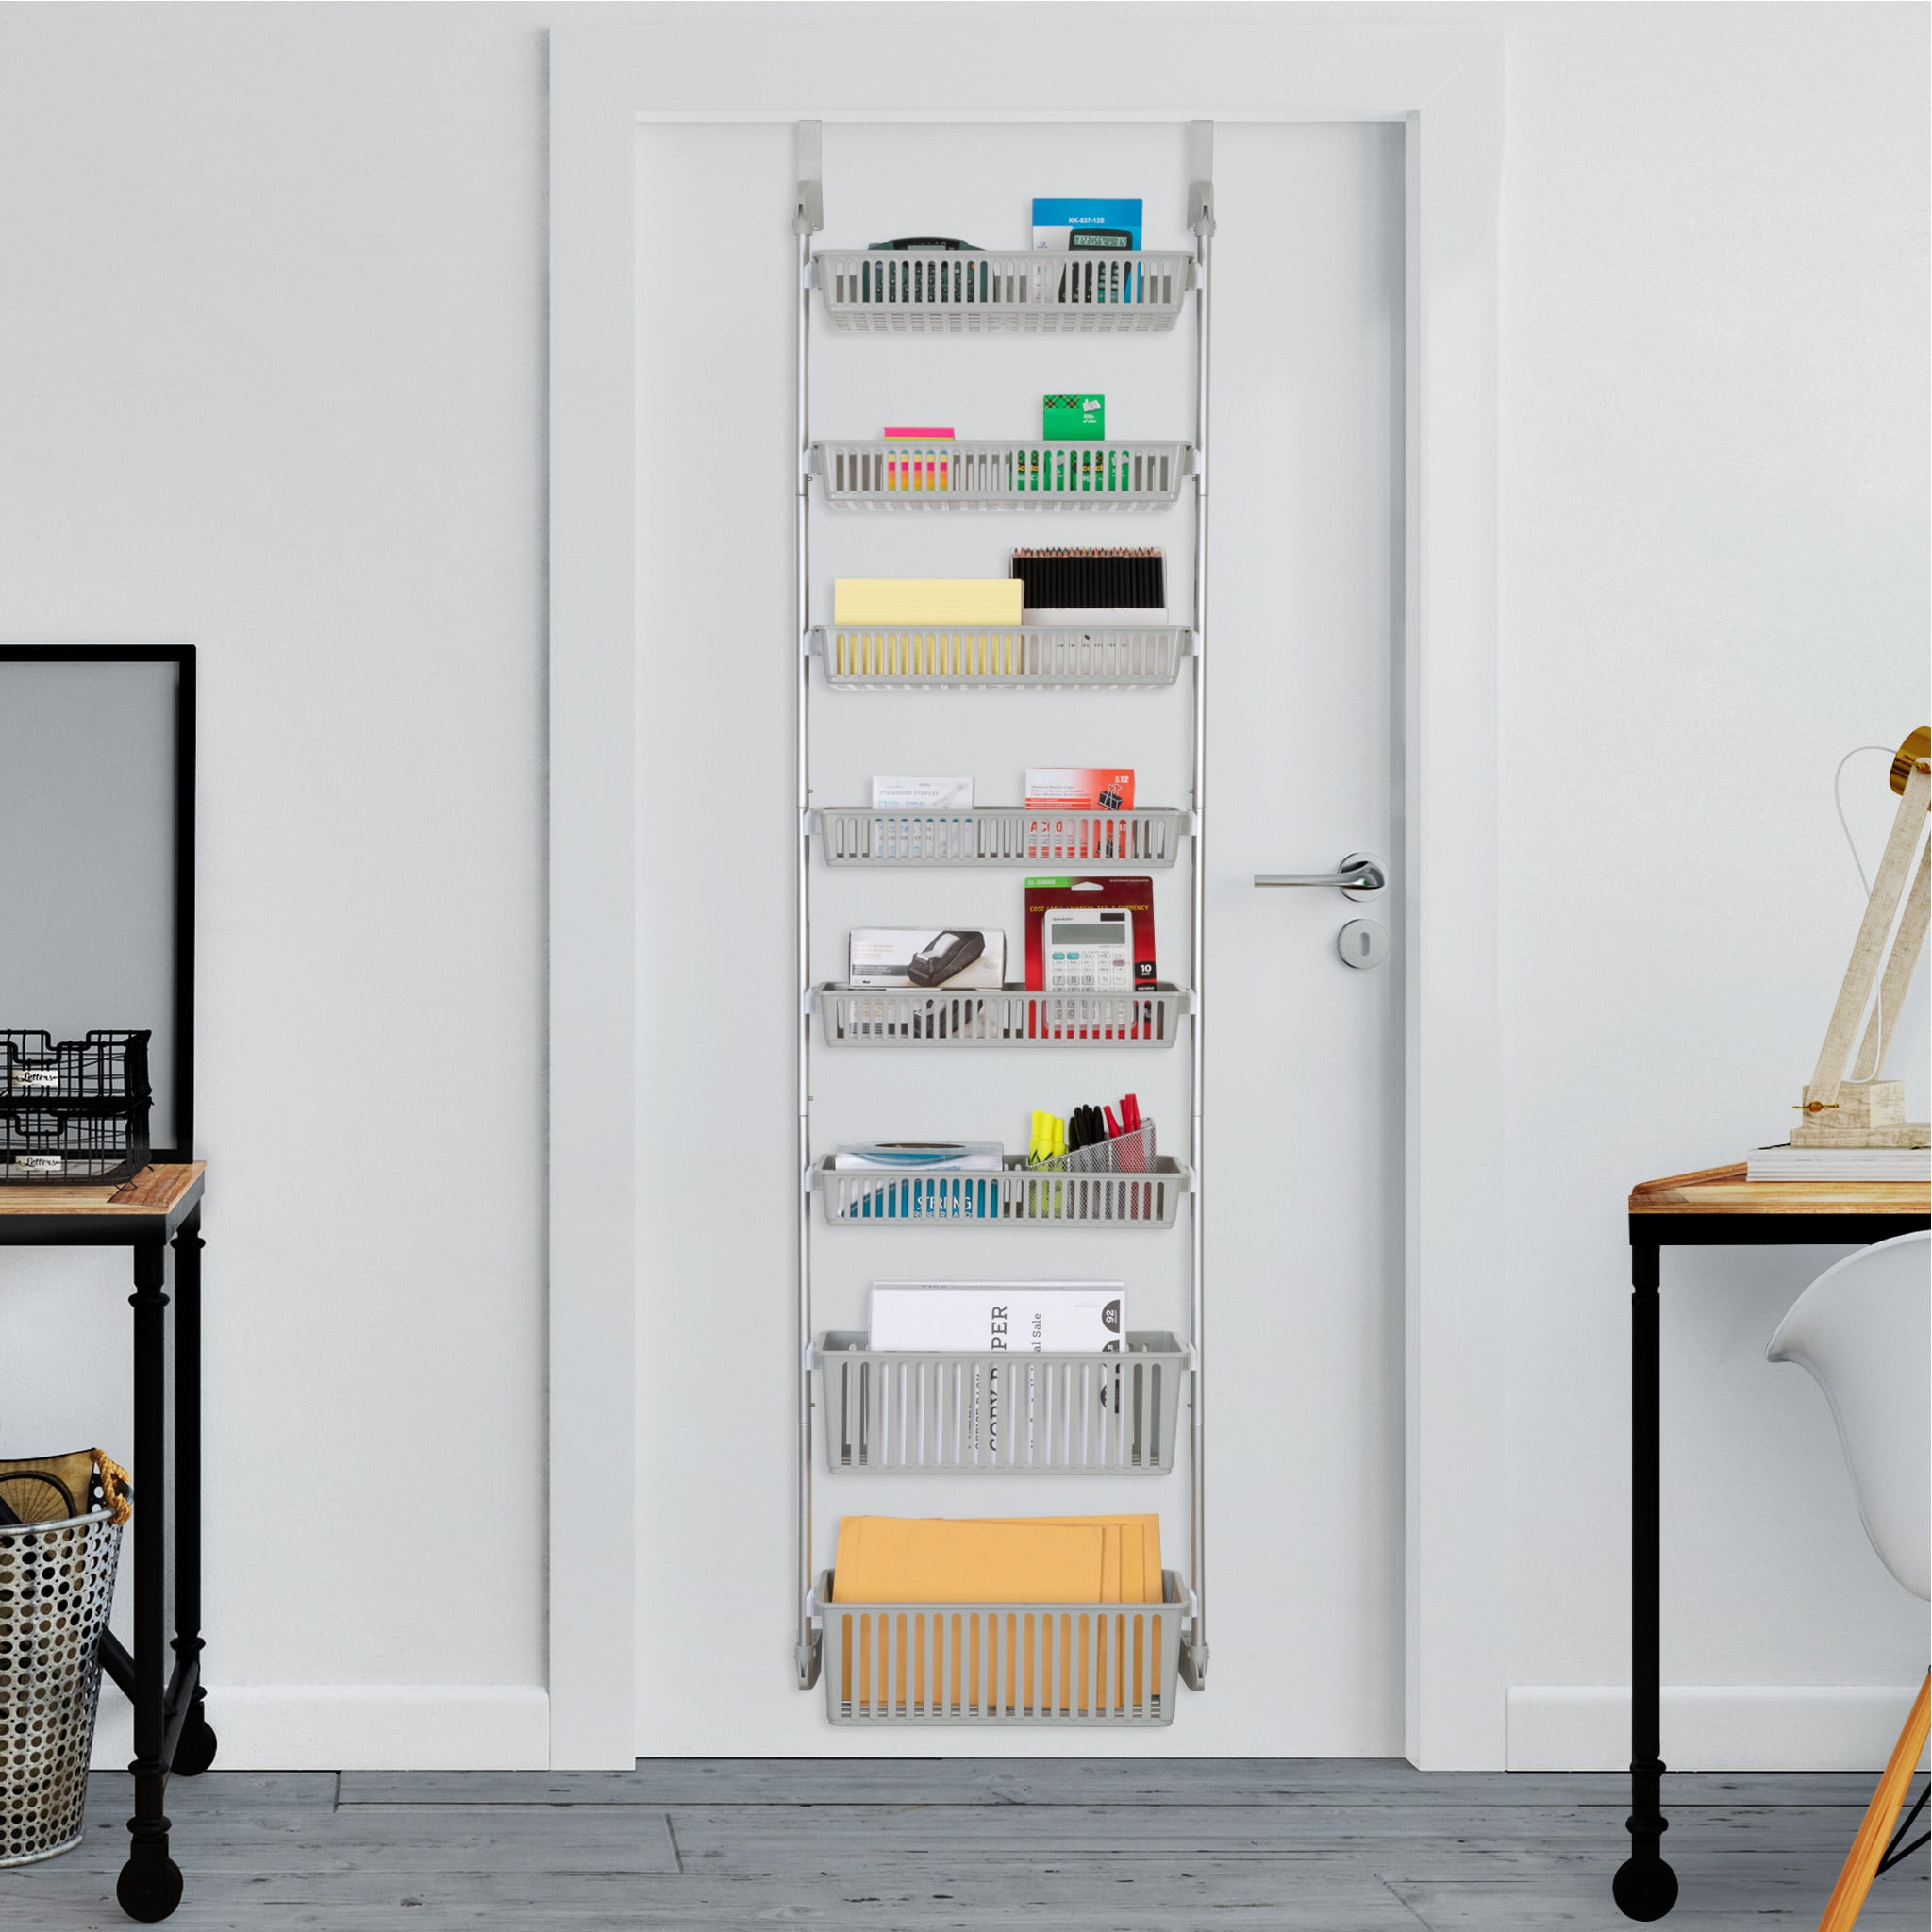 Smart Design Over the Door Pantry Organizer 18.11-in W x 77-in H 8